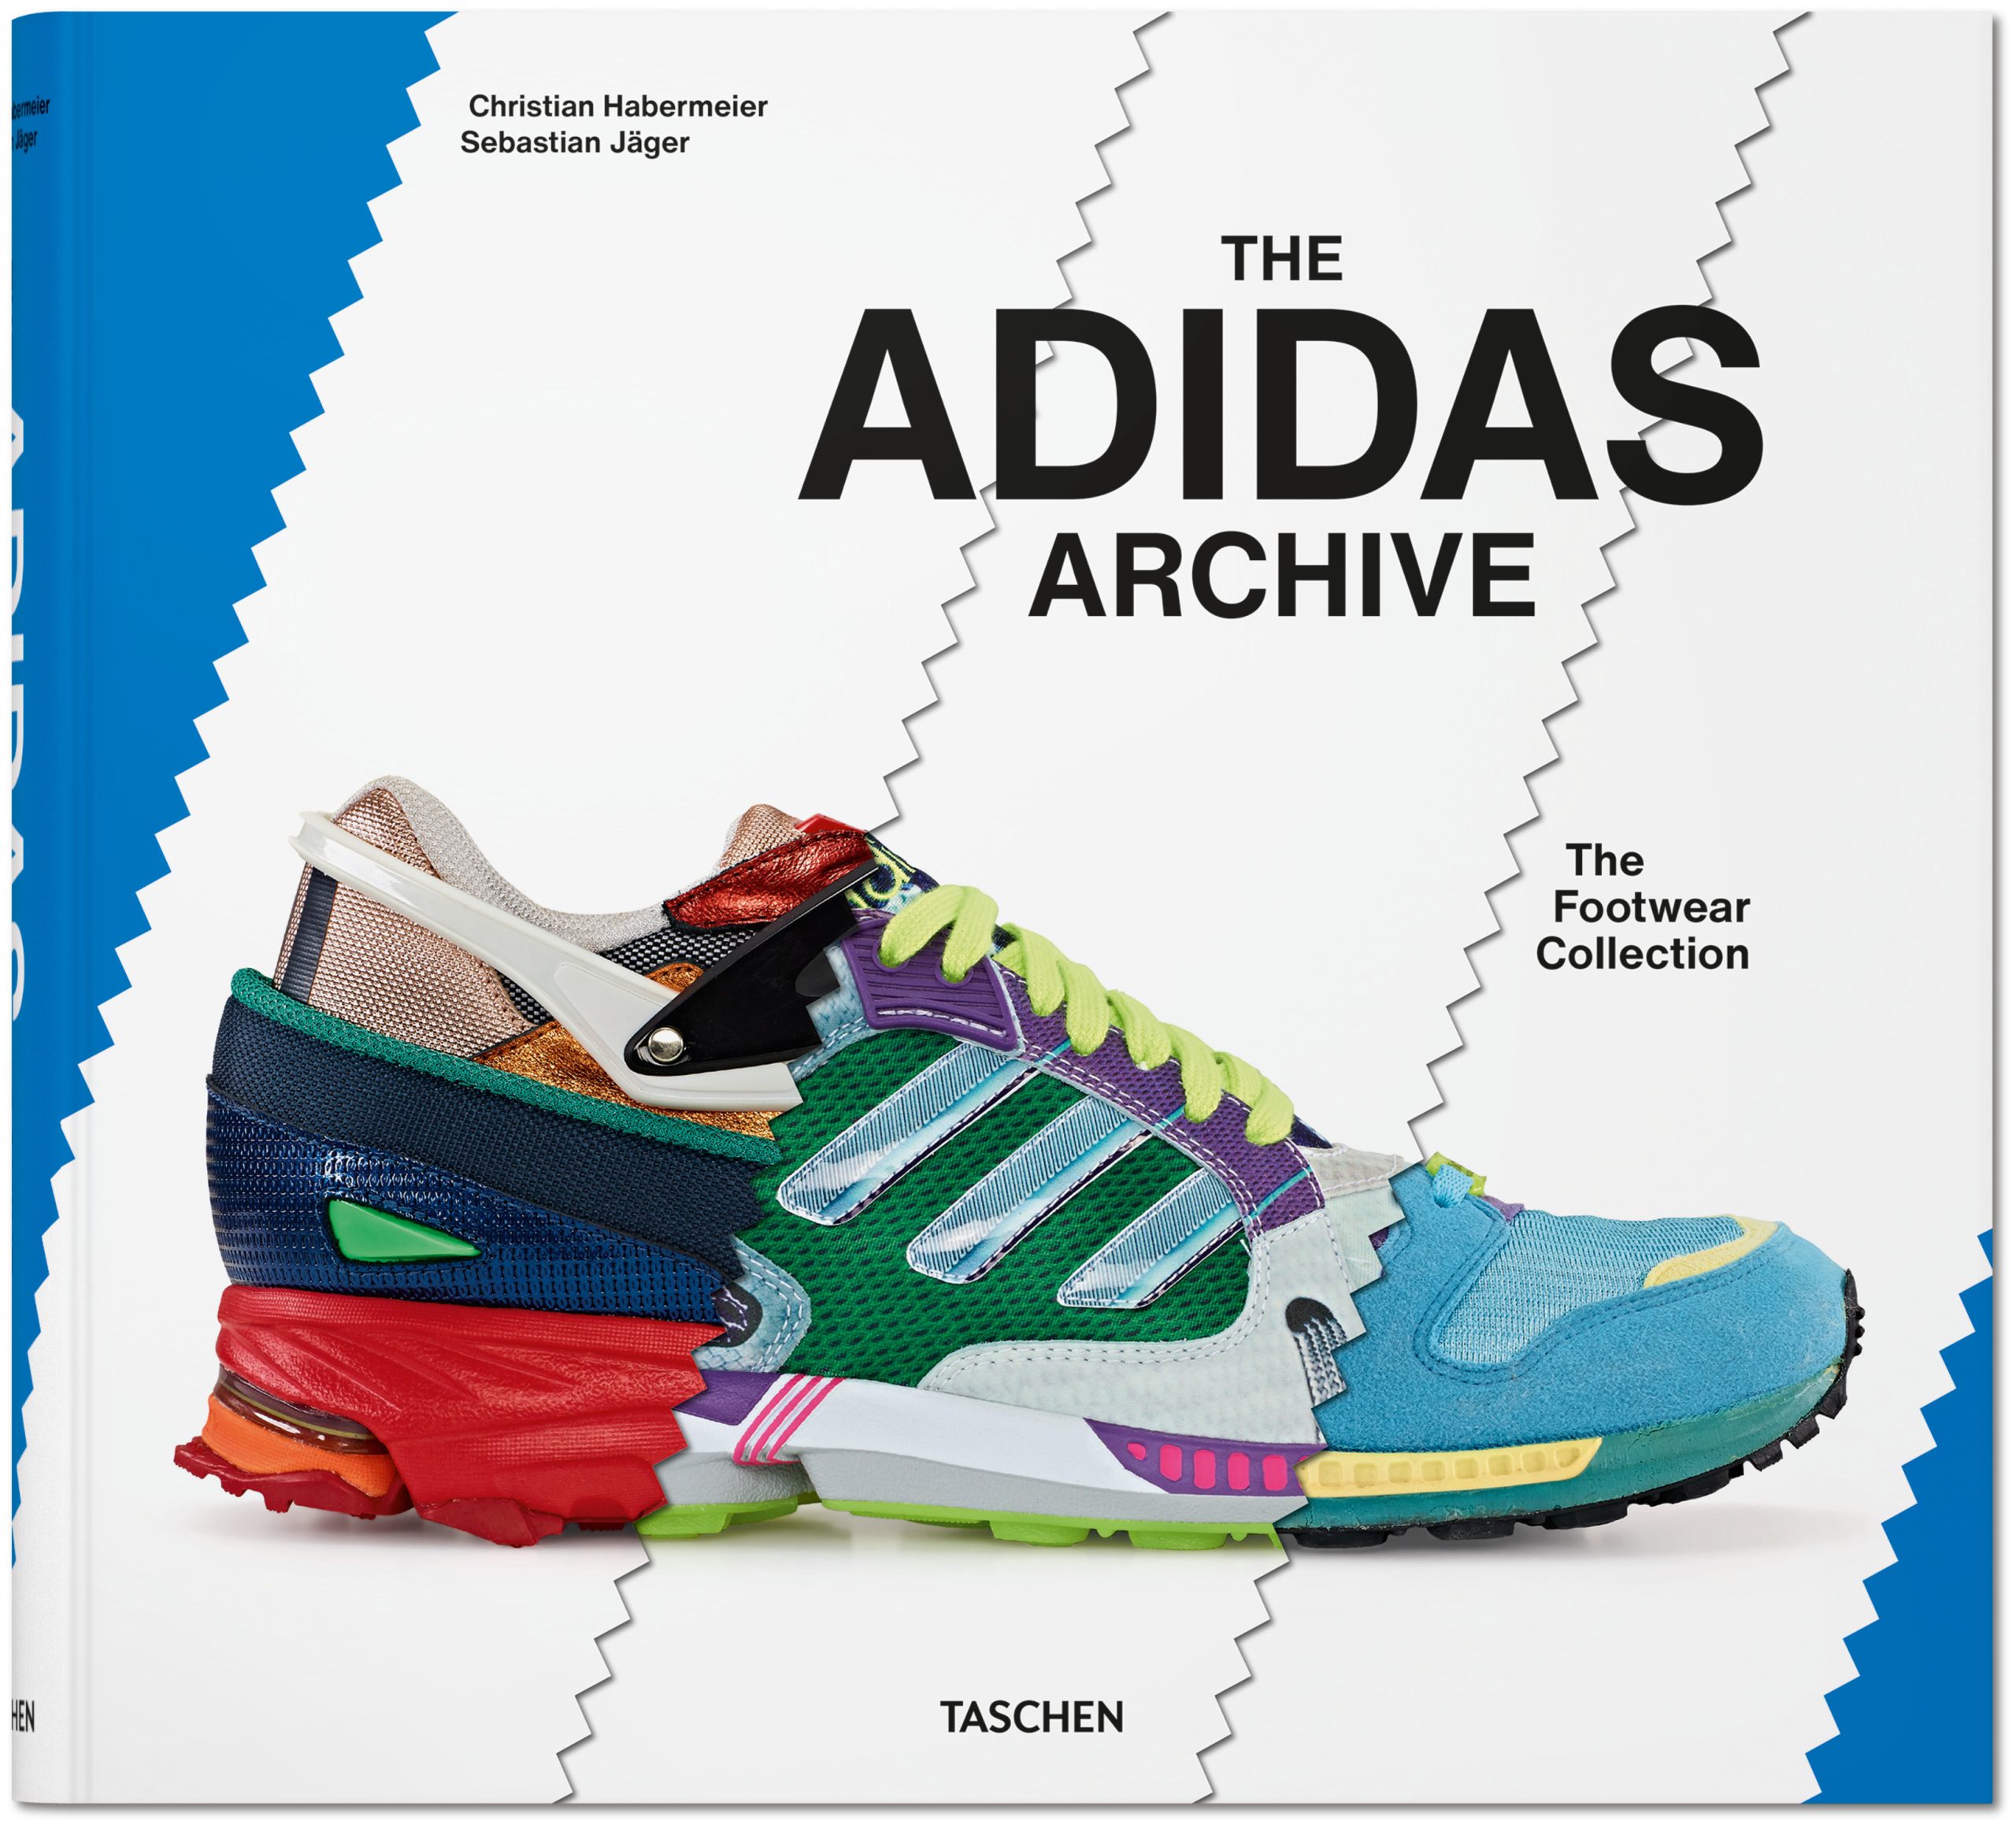 Production center Arrowhead Inquire The adidas Archive. The Footwear Collection" – Die Geschichte der adidas- Schuhe in Bildern